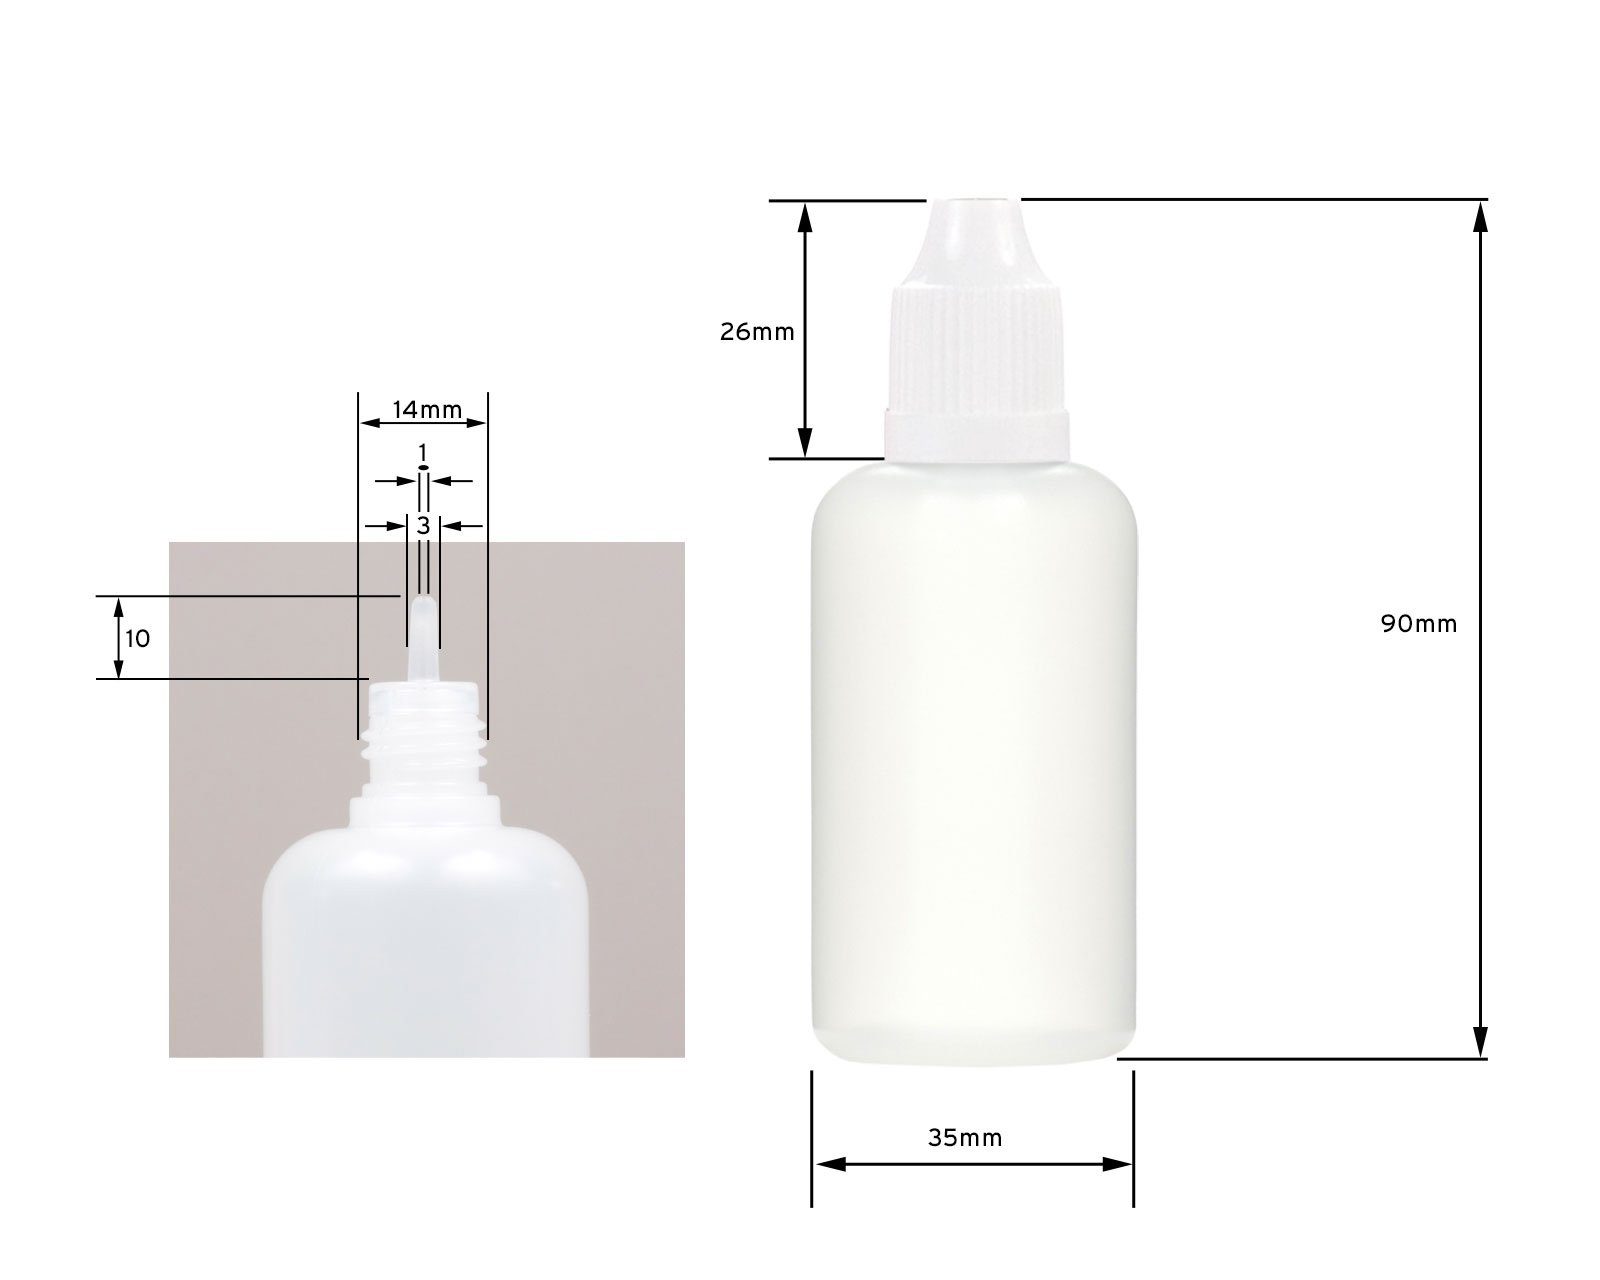 50 Plastikflaschen ml LDPE, 500 Kanister Tropfeinsatz, weiß G14, Deckel St) OCTOPUS (500